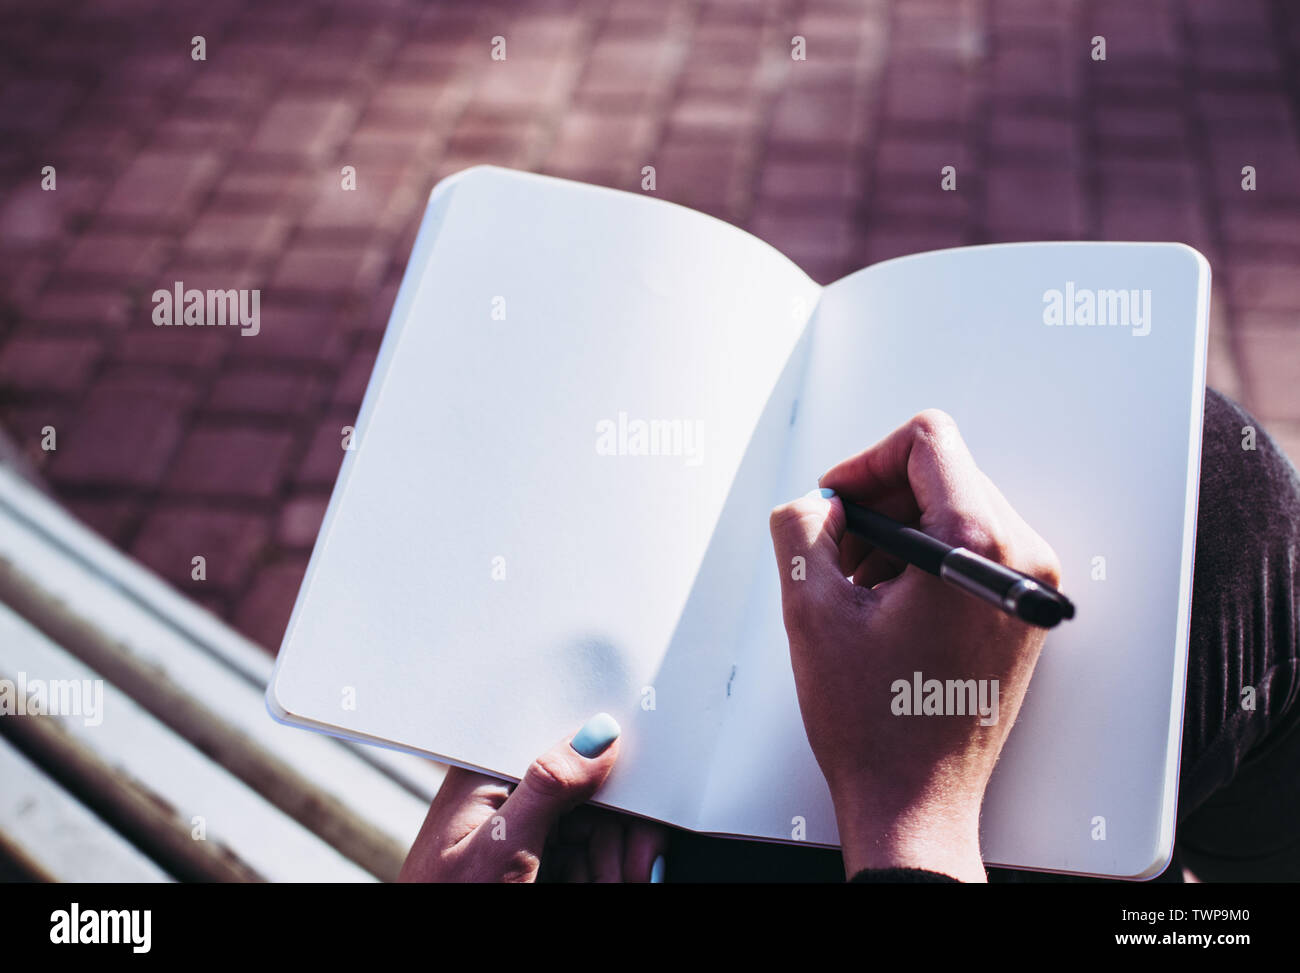 Close-up de las páginas en blanco de un ordenador portátil y una chica de la mano empezando a escribir sus pensamientos e ideas. Concepto de trabajar en una tarea, essa Foto de stock